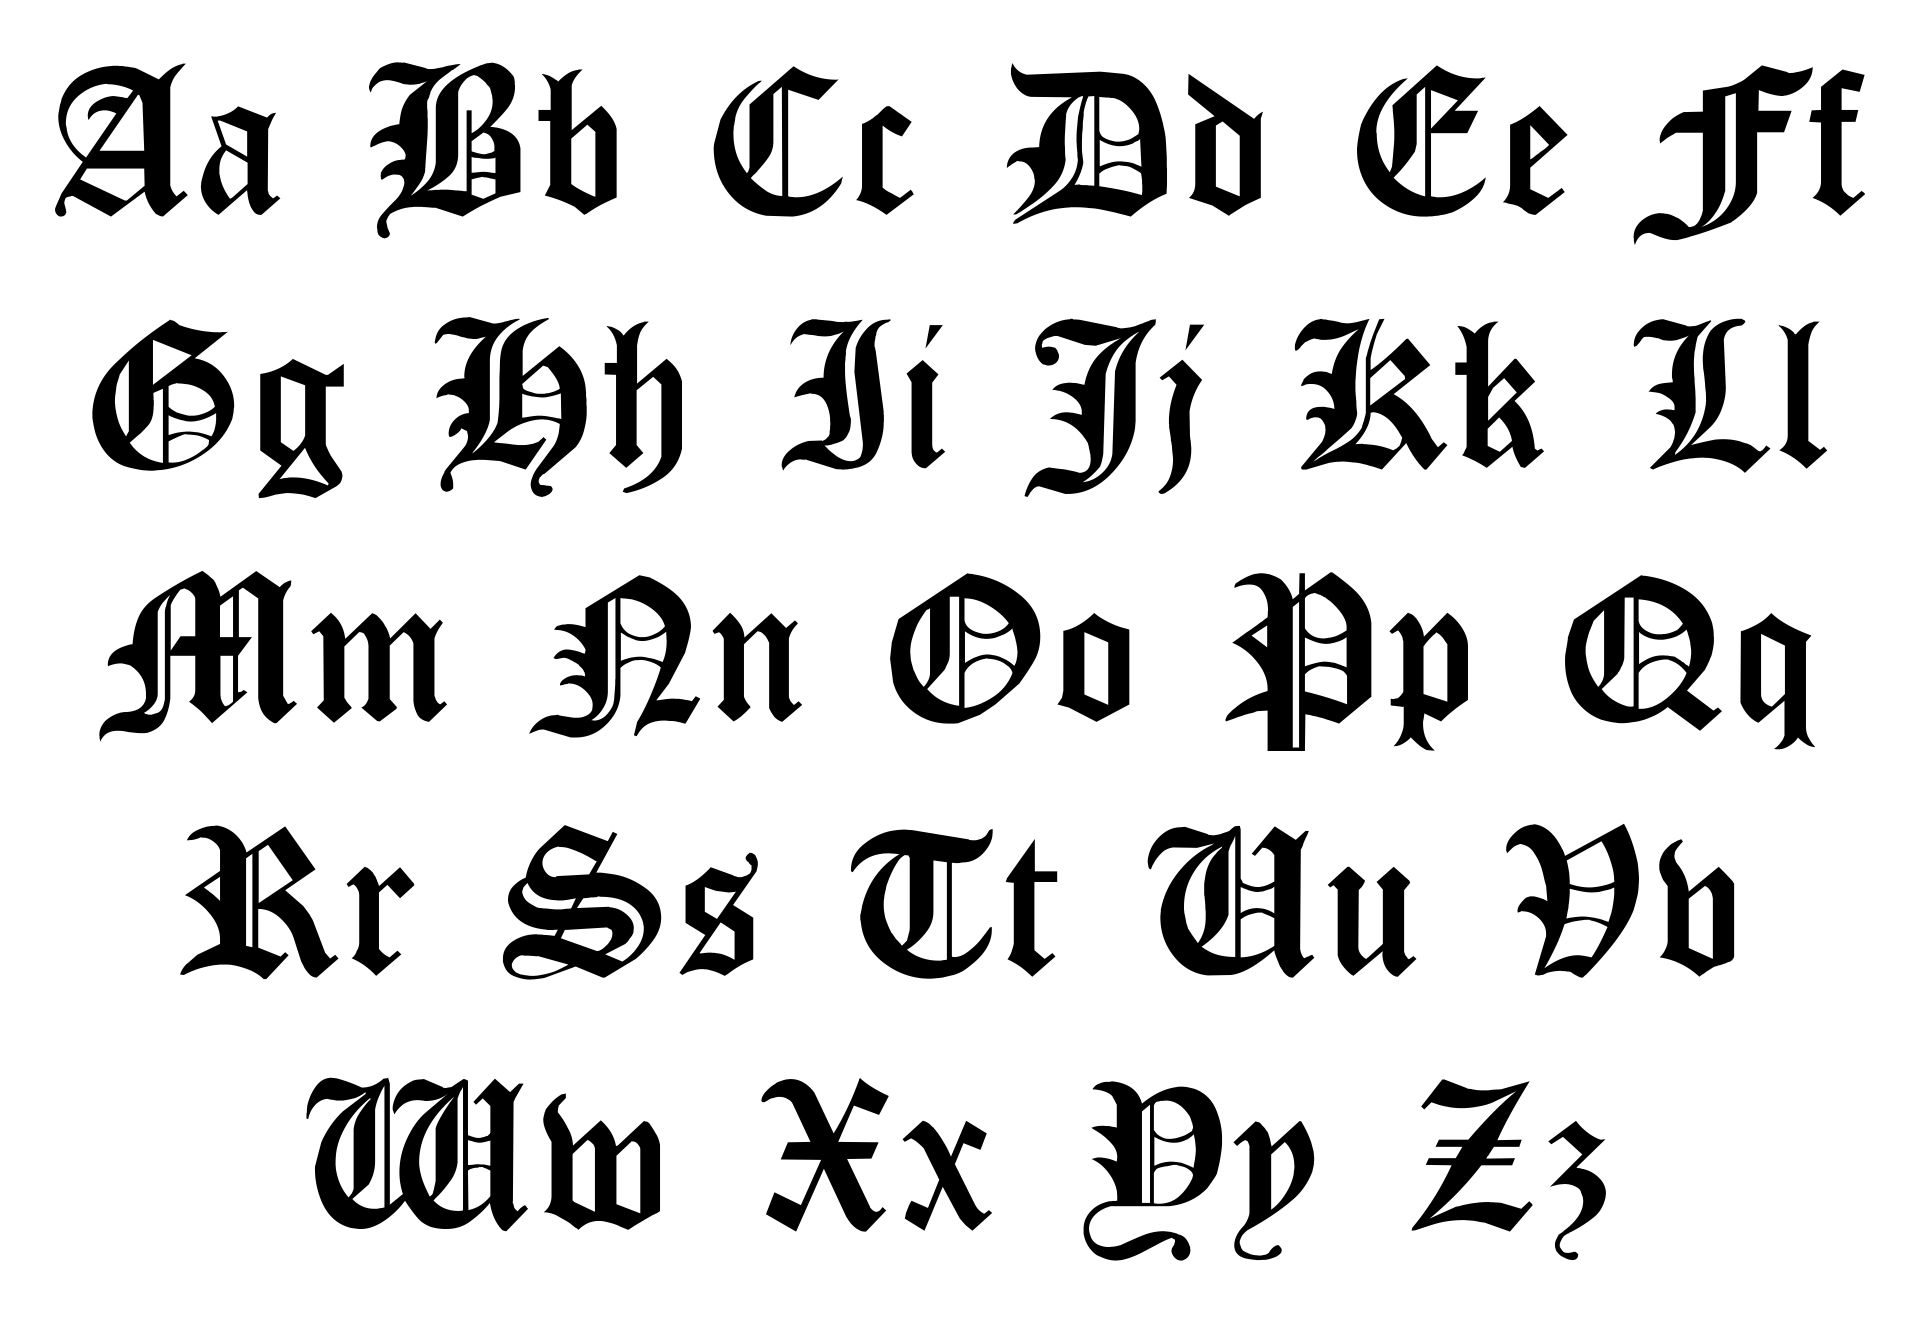 Printable Old English Alphabet A-Z_63817